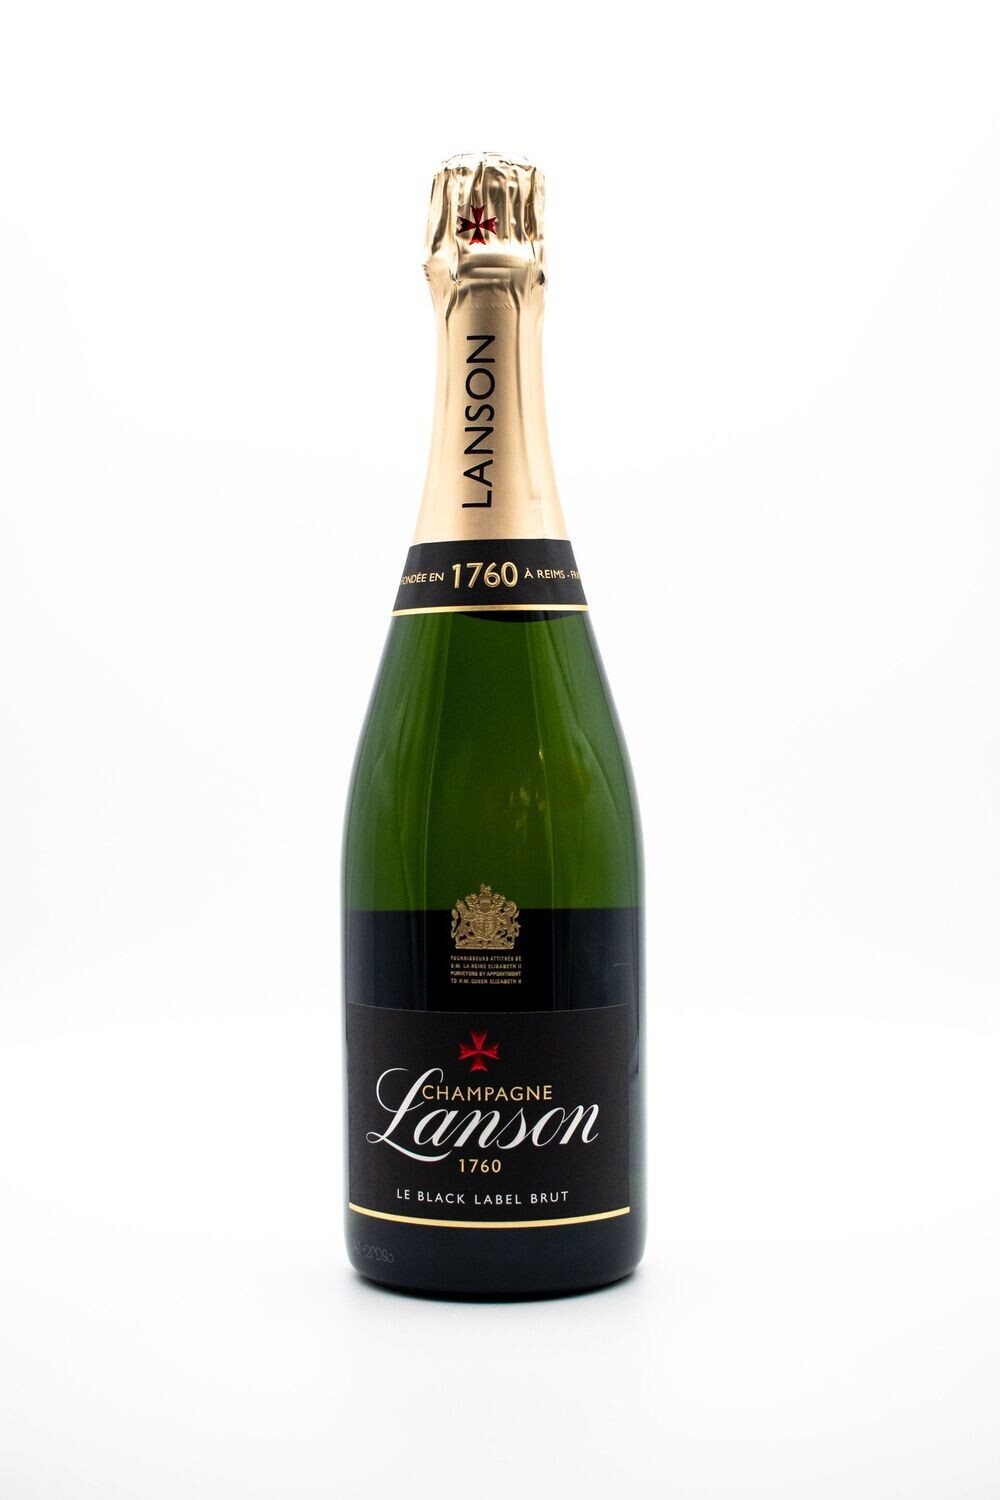 Lanson Lanson le black label brut -Champagne